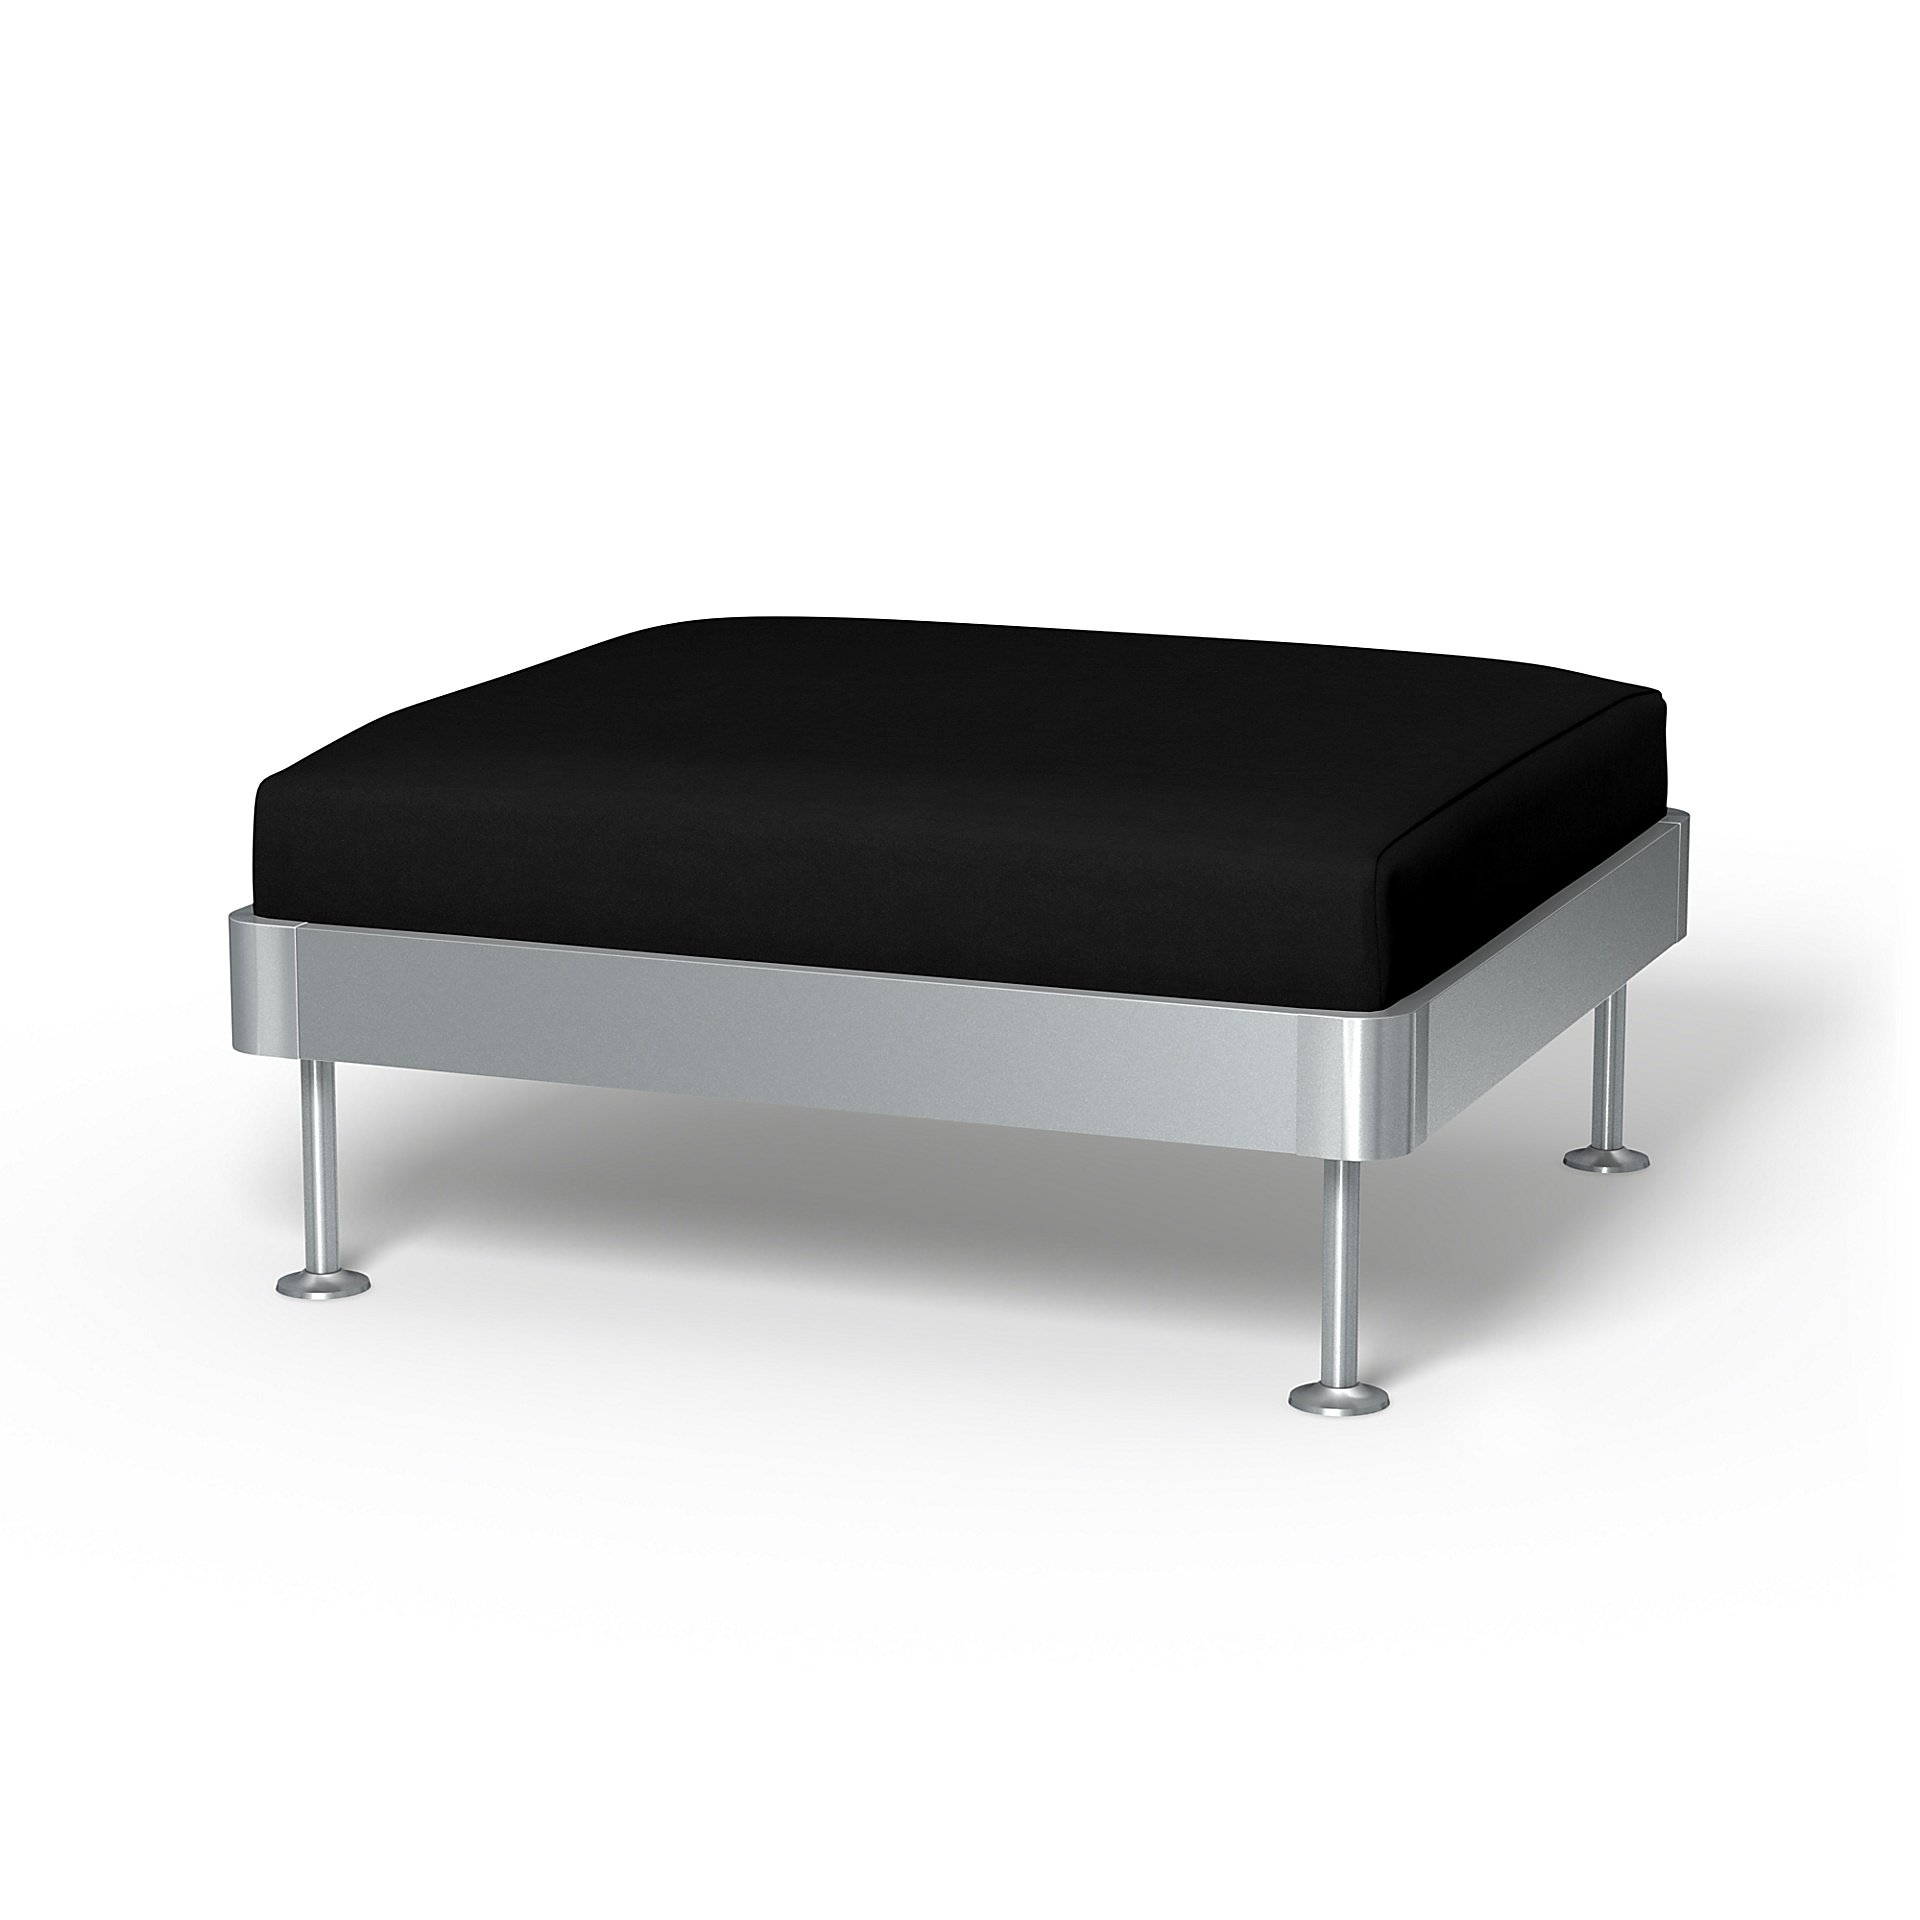 IKEA - Delaktig 1 Seat Platform Cover, Black, Velvet - Bemz